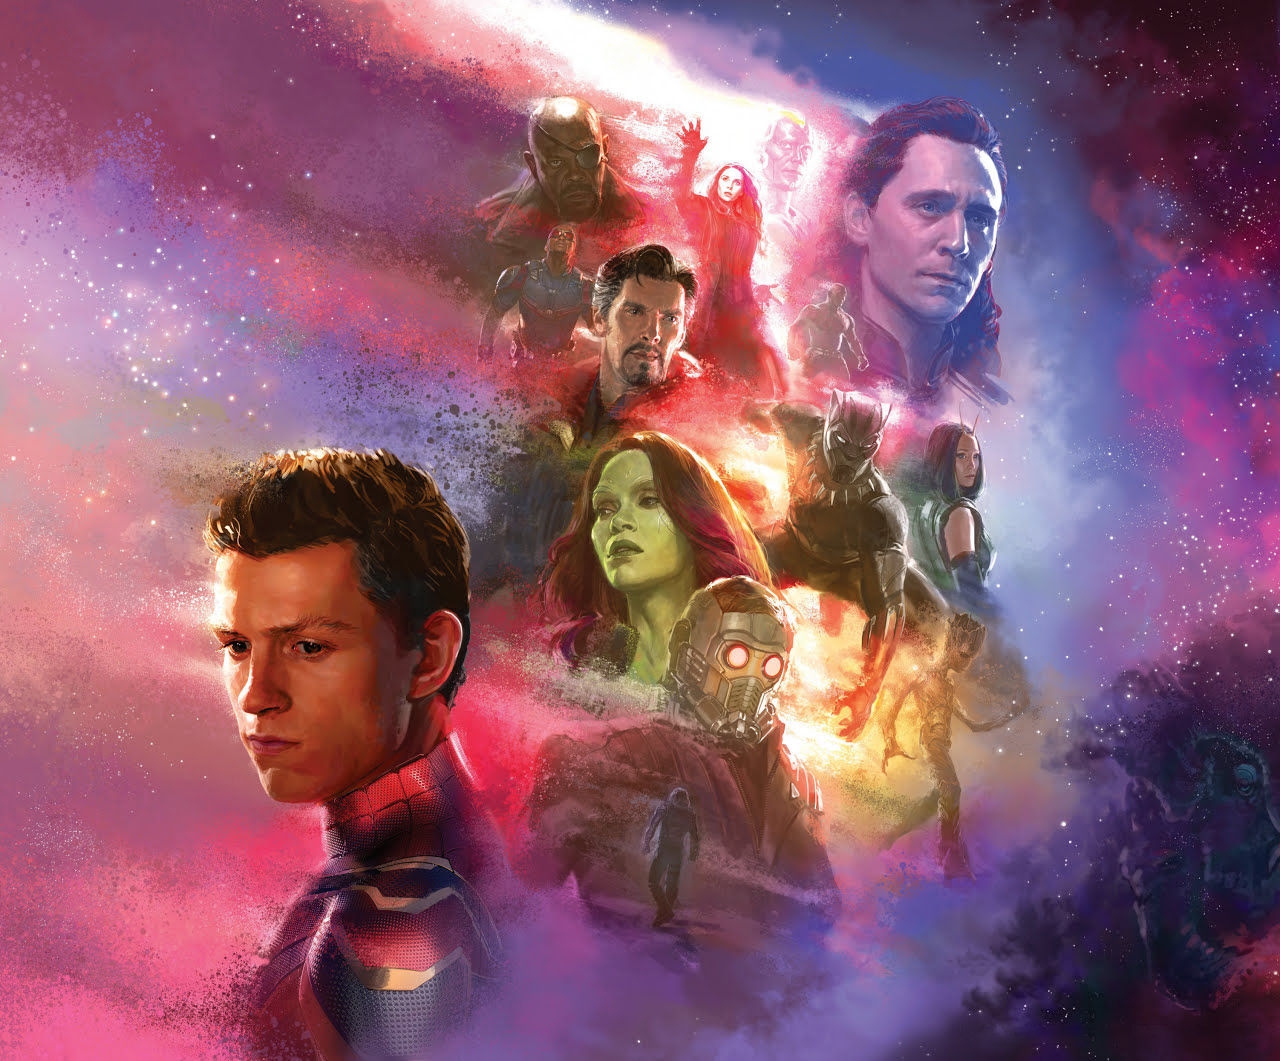 The Art of Marvel's Avengers Infinity War 326